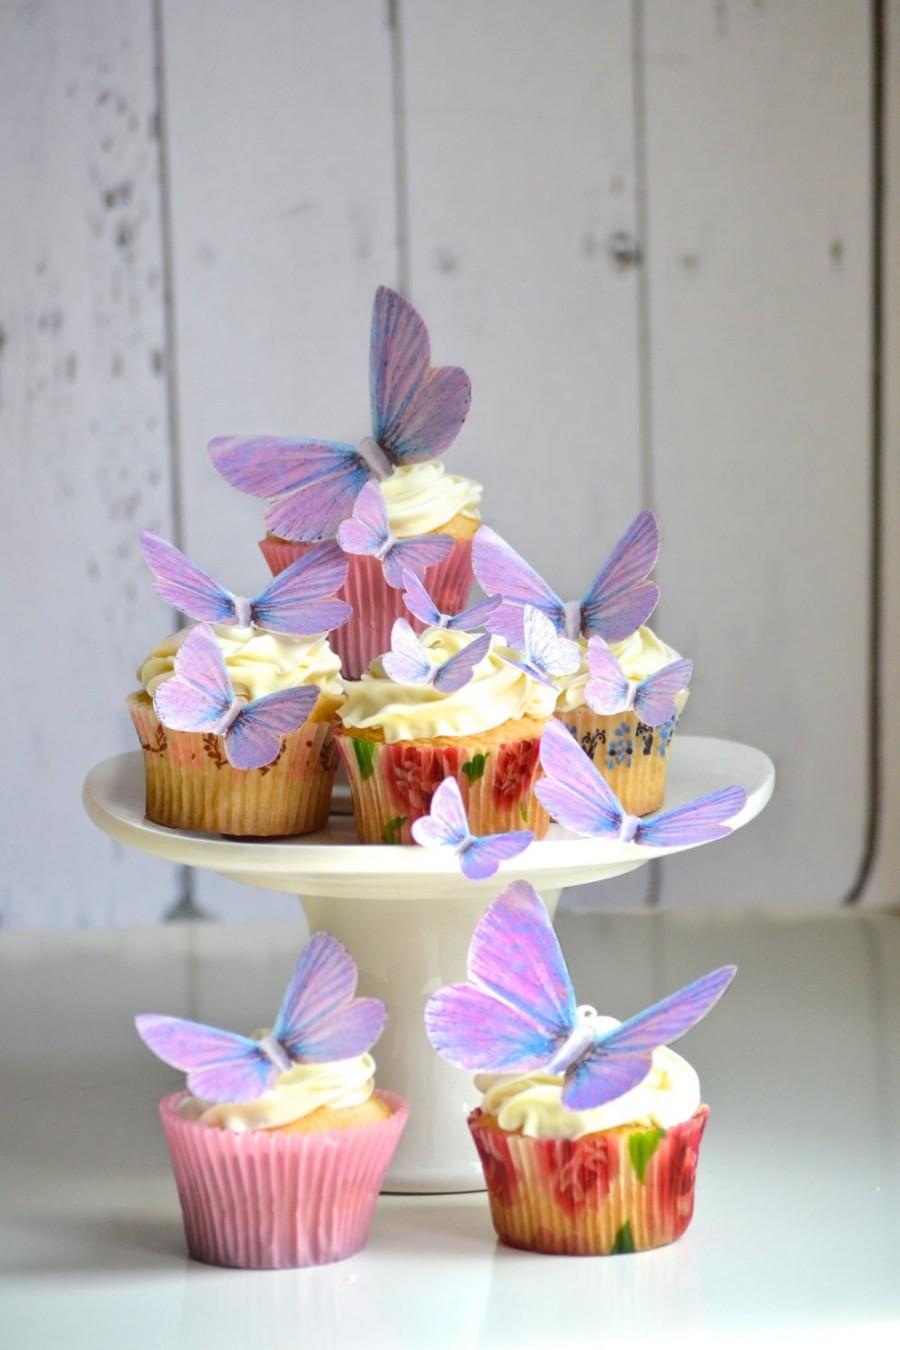 زفاف - Wedding Cake Topper Edible Butterflies in Lavender - Cake & Cupcake toppers - Food decorations - Edible Wedding Favor